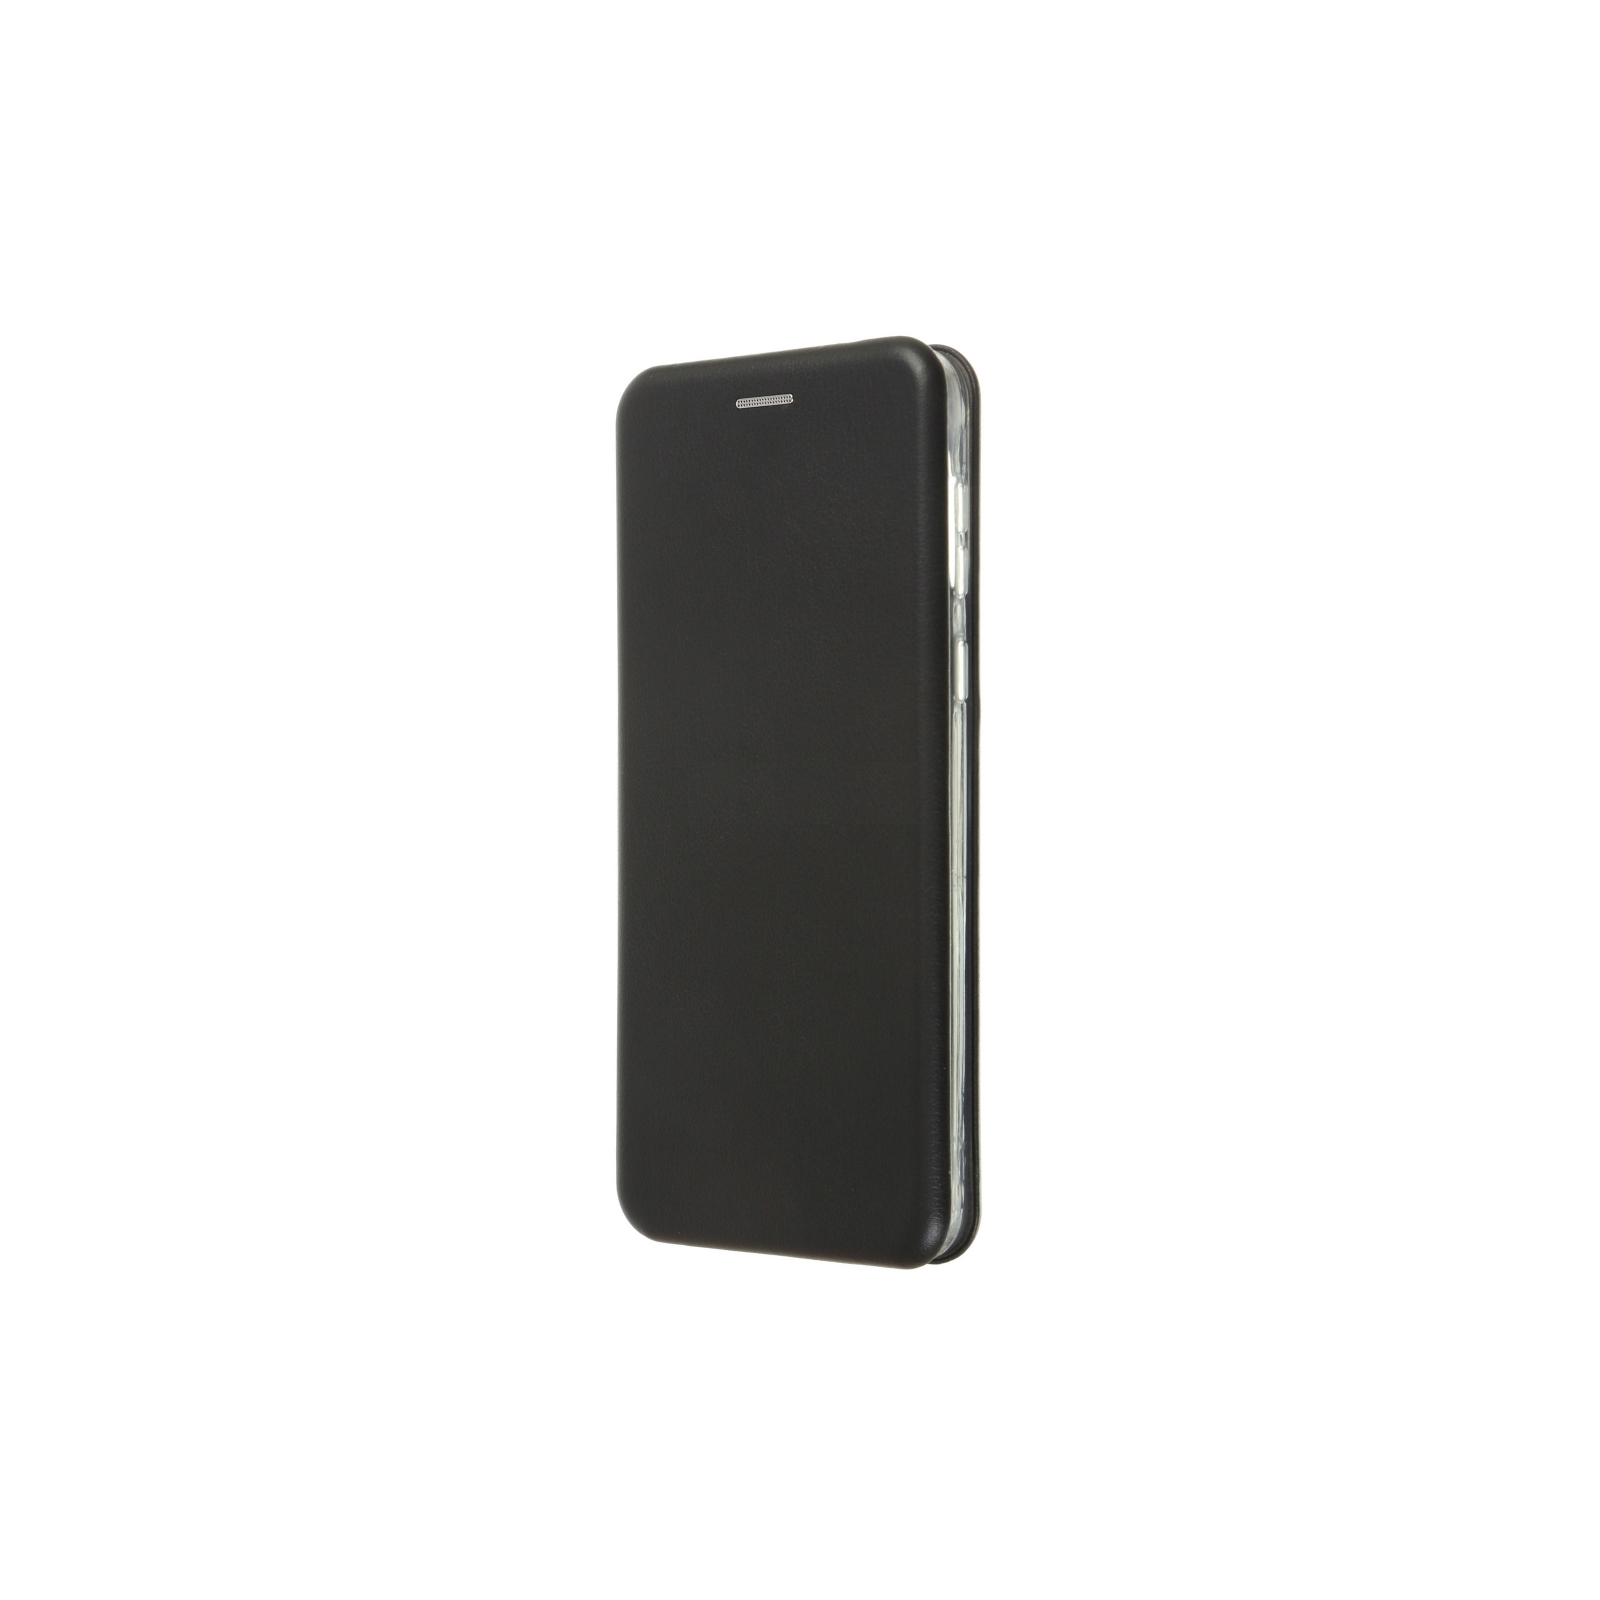 Чехол для мобильного телефона Armorstandart G-Case Motorola E13 Blue (ARM66149)